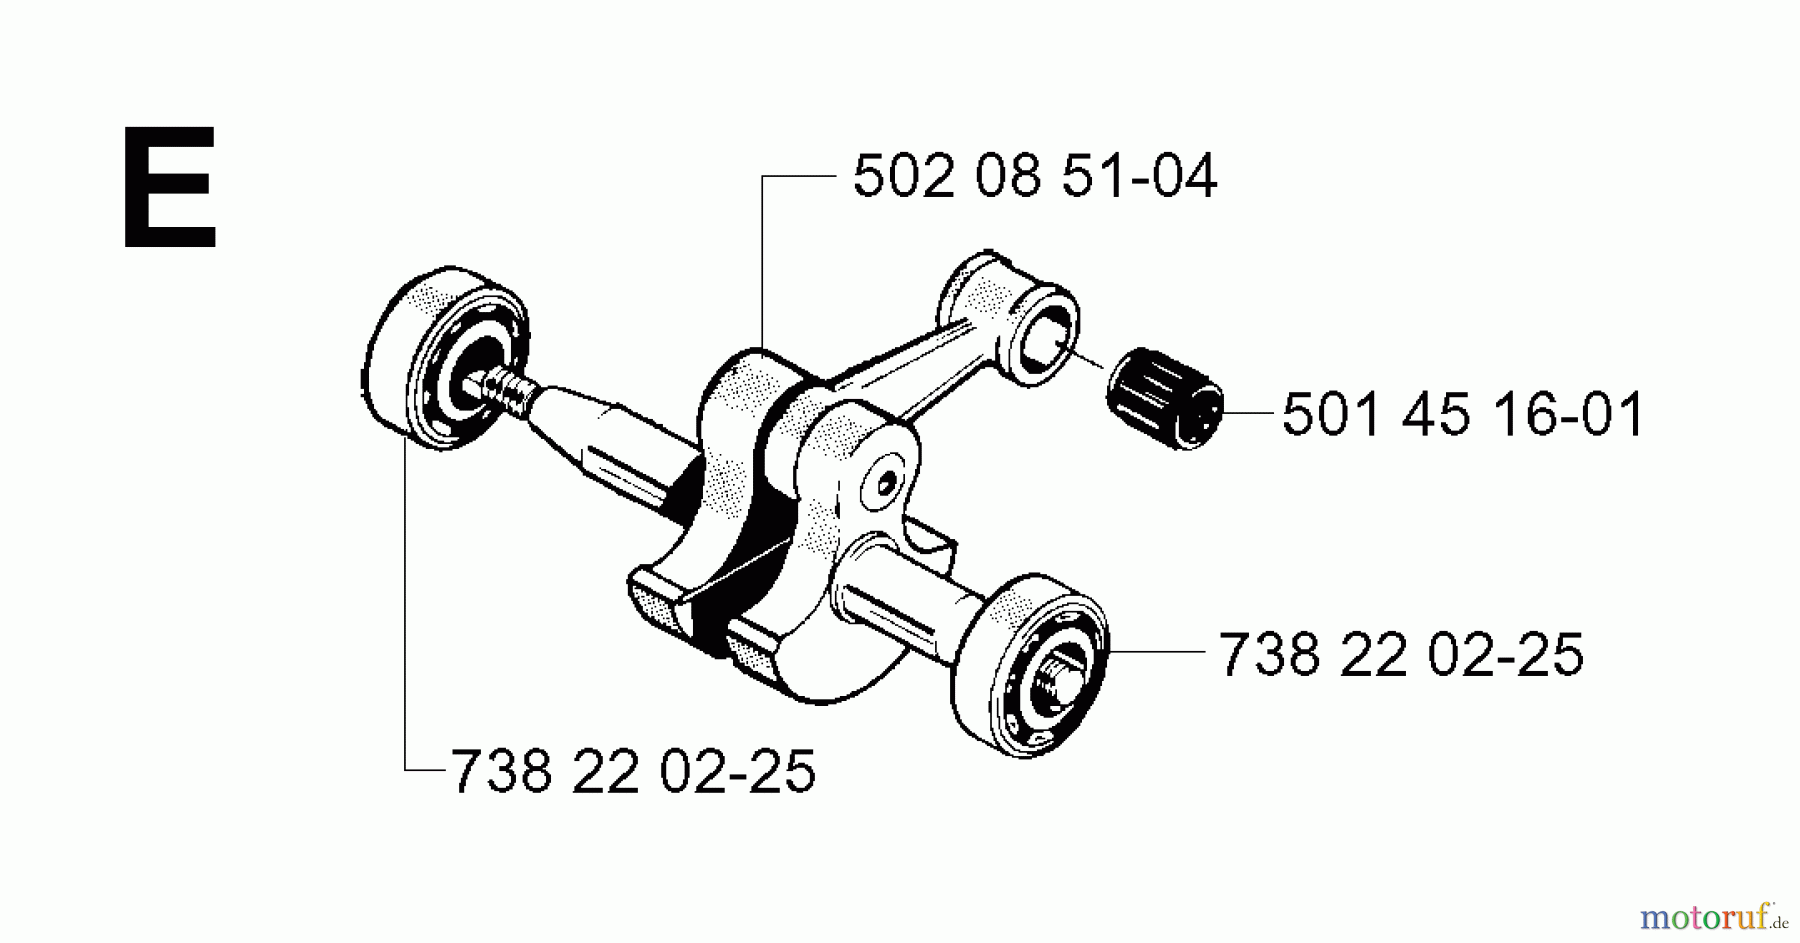  Jonsered Motorsensen, Trimmer RS52 EPA - Jonsered String/Brush Trimmer (2001-05) CRANKSHAFT